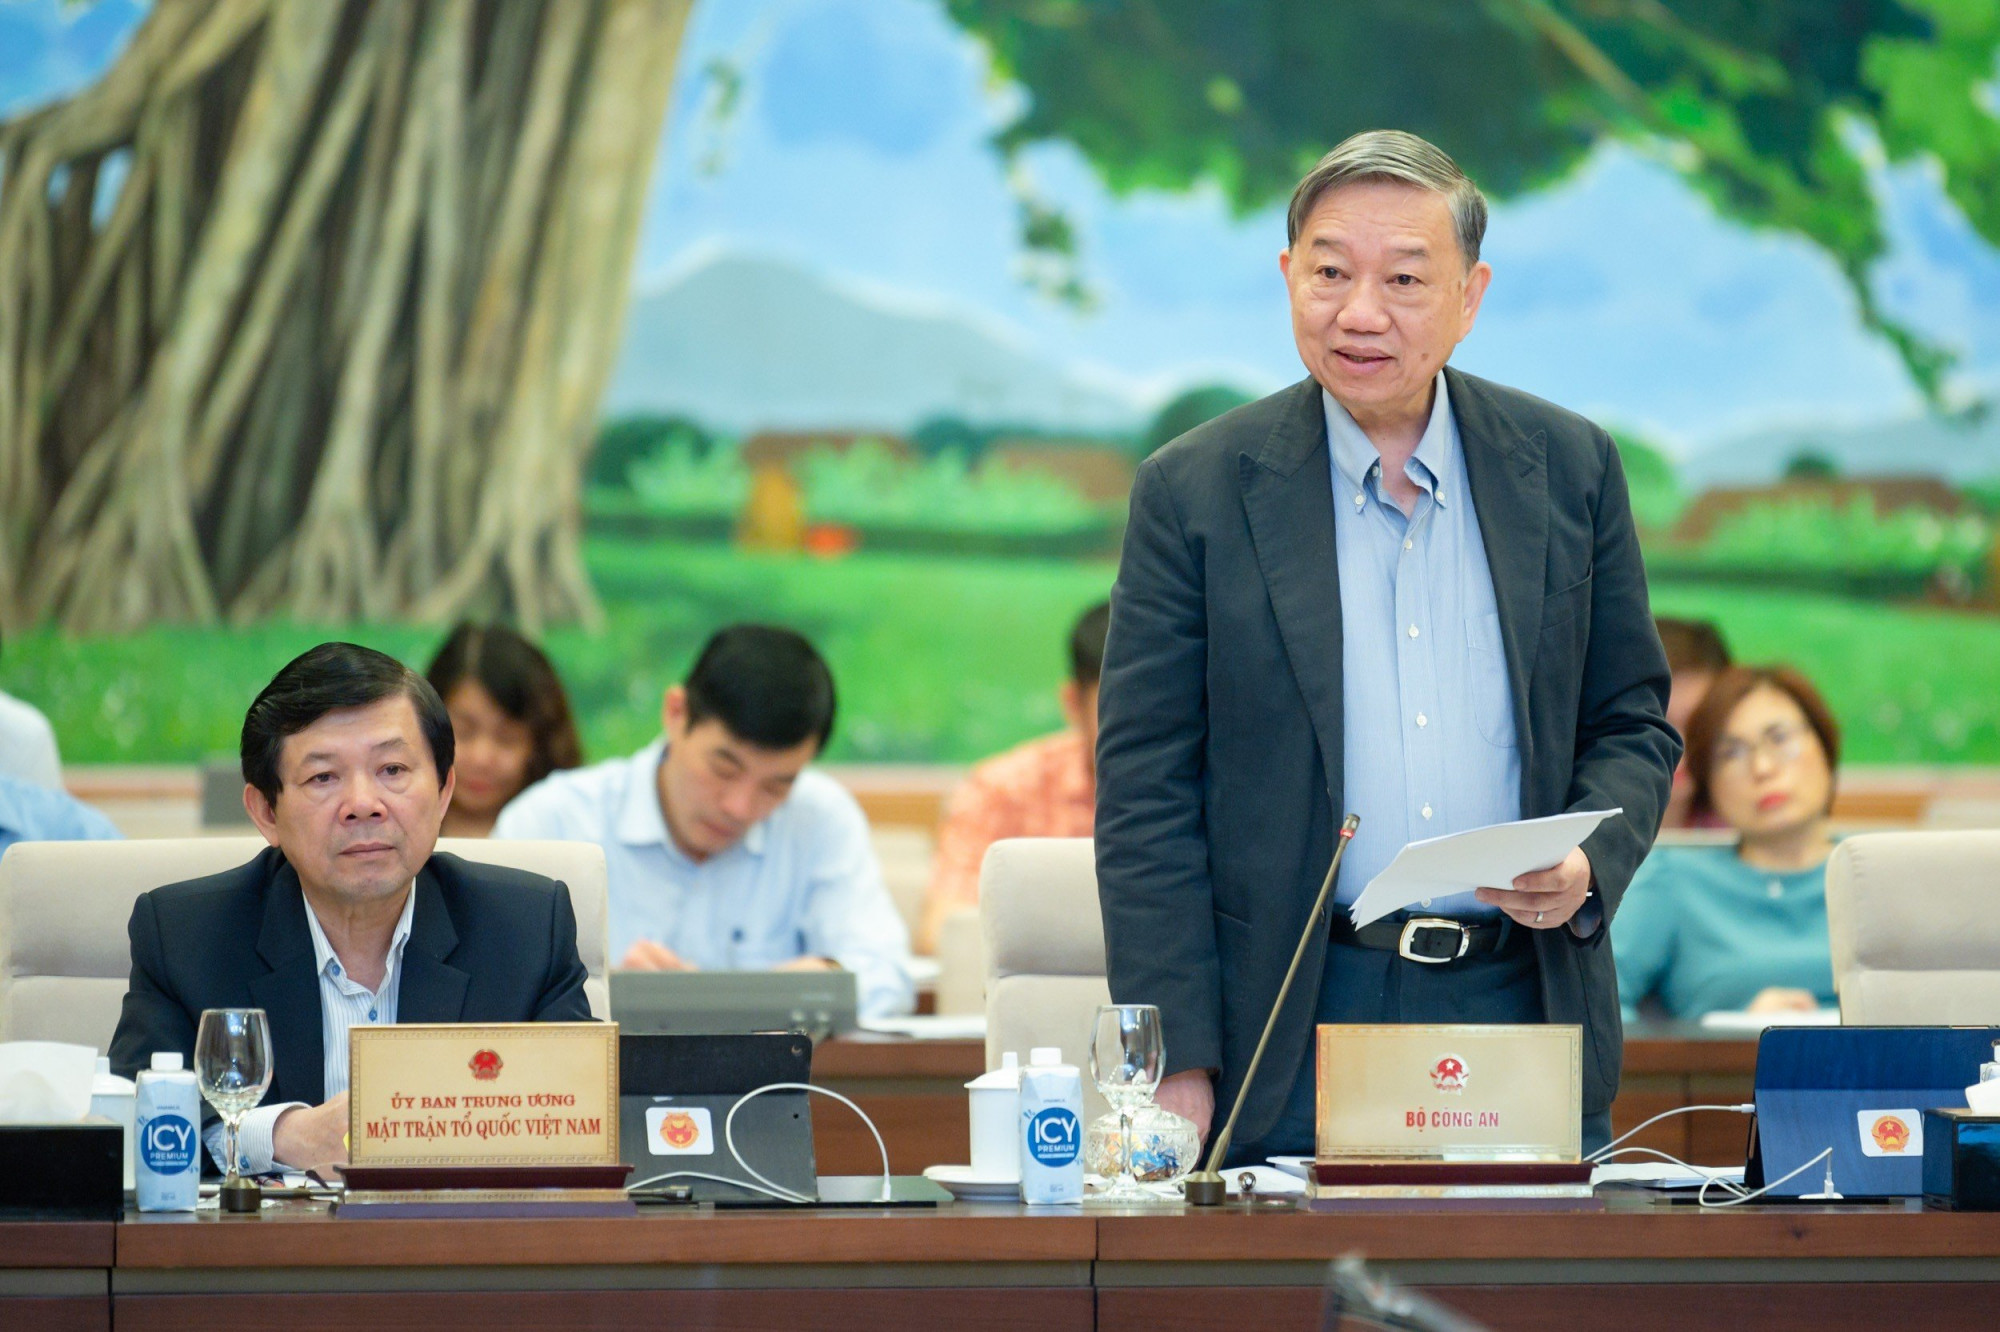 Bộ trưởng Bộ Công an Tô Lâm cho rằng, việc bổ sung cấp căn cước công dân cho trẻ dưới 14 tuổi là bảo đảm tính khả thi, đáp ứng yêu cầu của Chính phủ điện tử